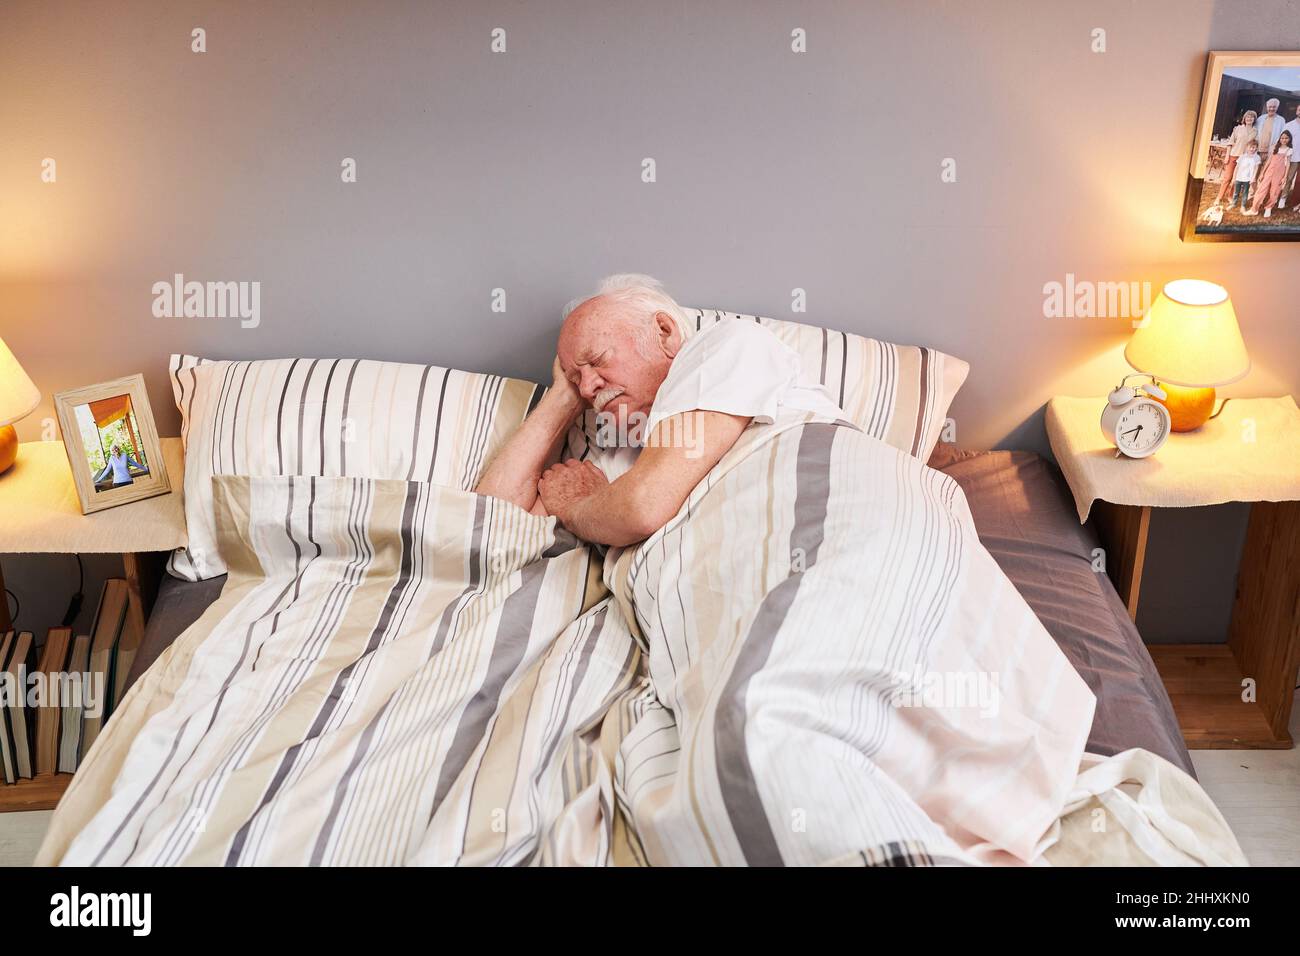 Ein älterer Mann, der den Kopf auf dem Kopfkissen hielt, während er unter einer gestreiften Decke auf dem Doppelbett im Schlafzimmer lag und schlief Stockfoto